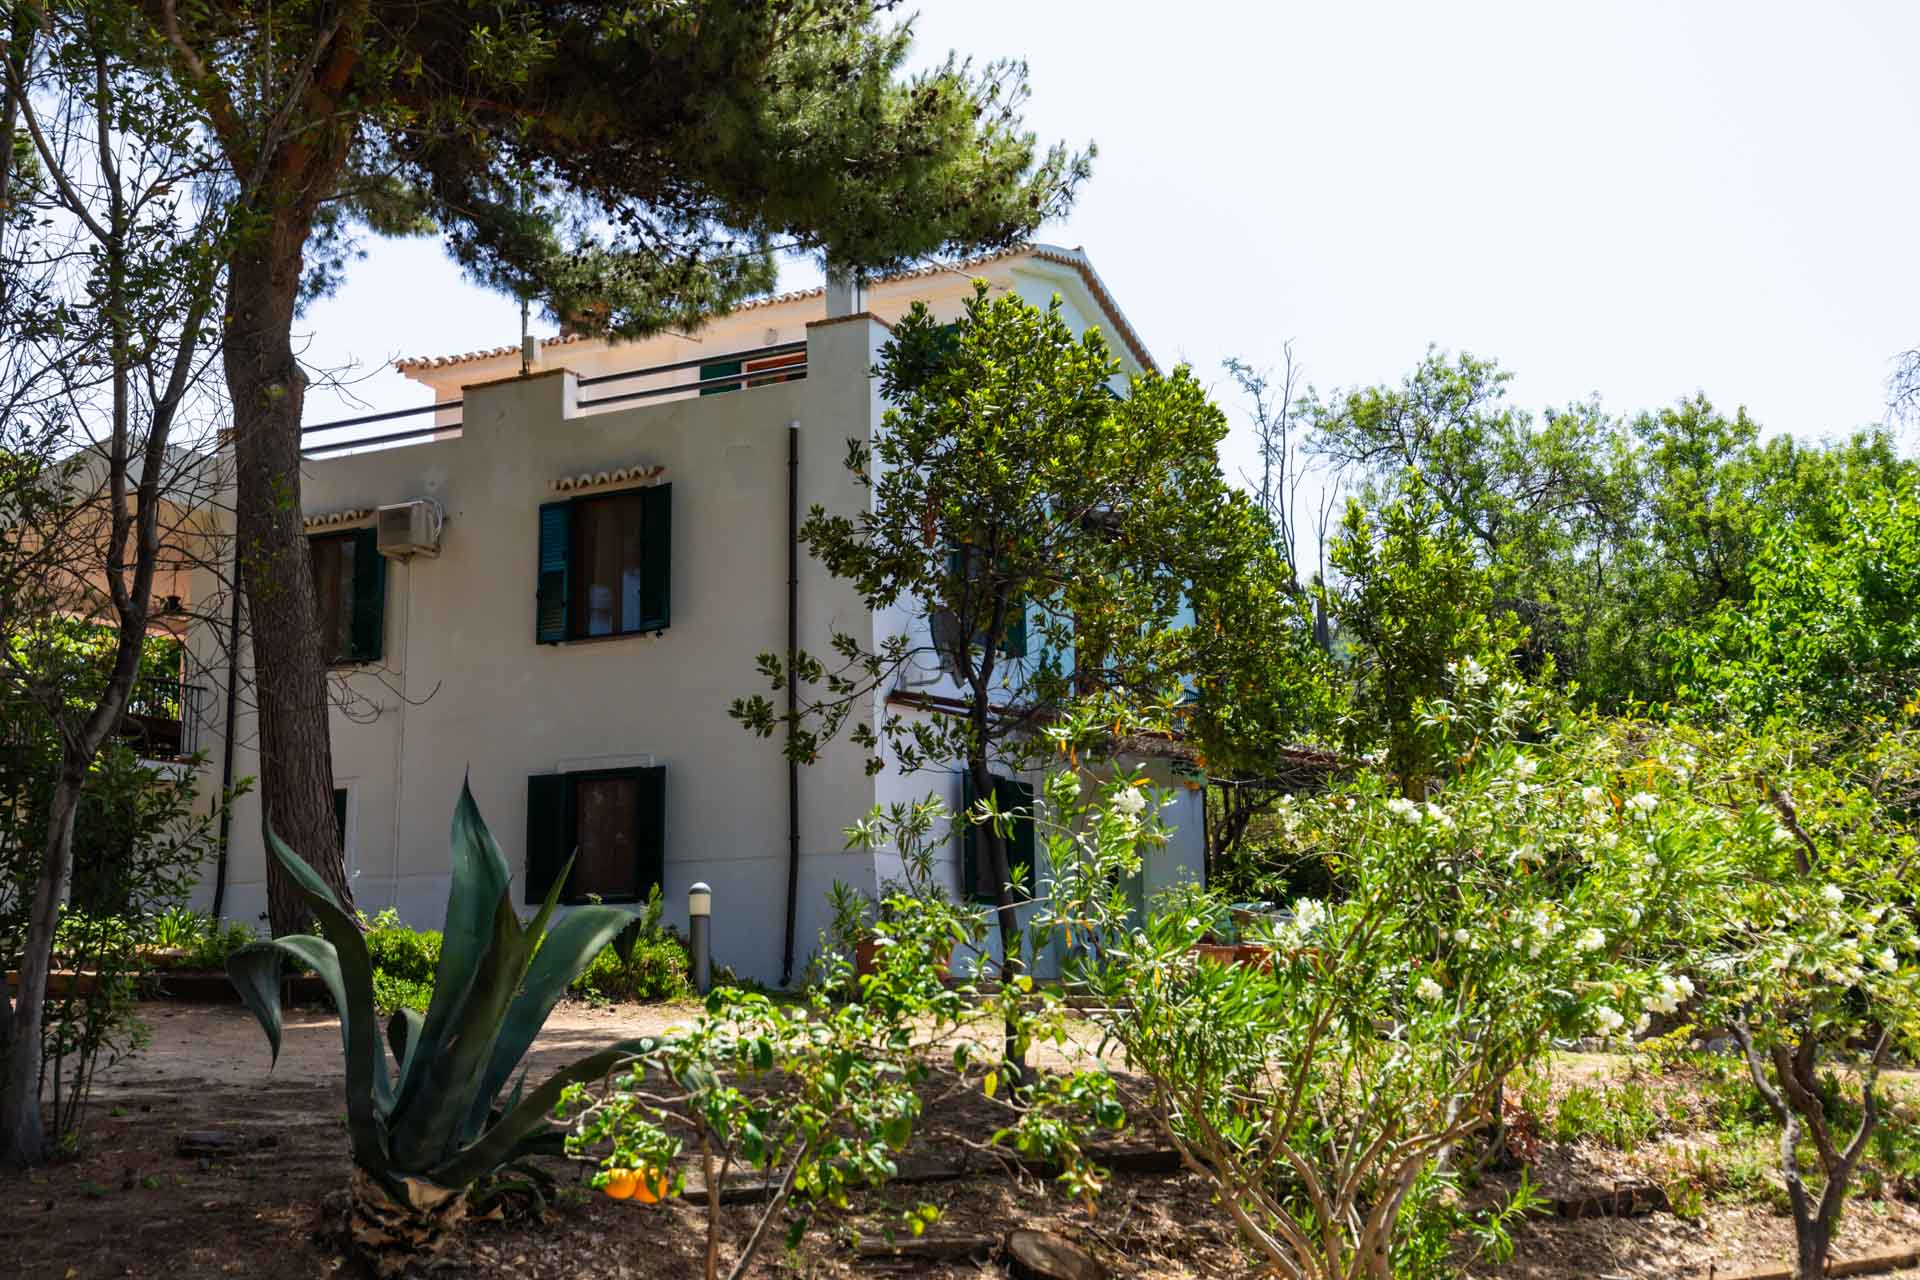 Survara ideale villa per vacanze di gruppo a Capo Vaticano e Tropea può ospitare fino a 8 persone